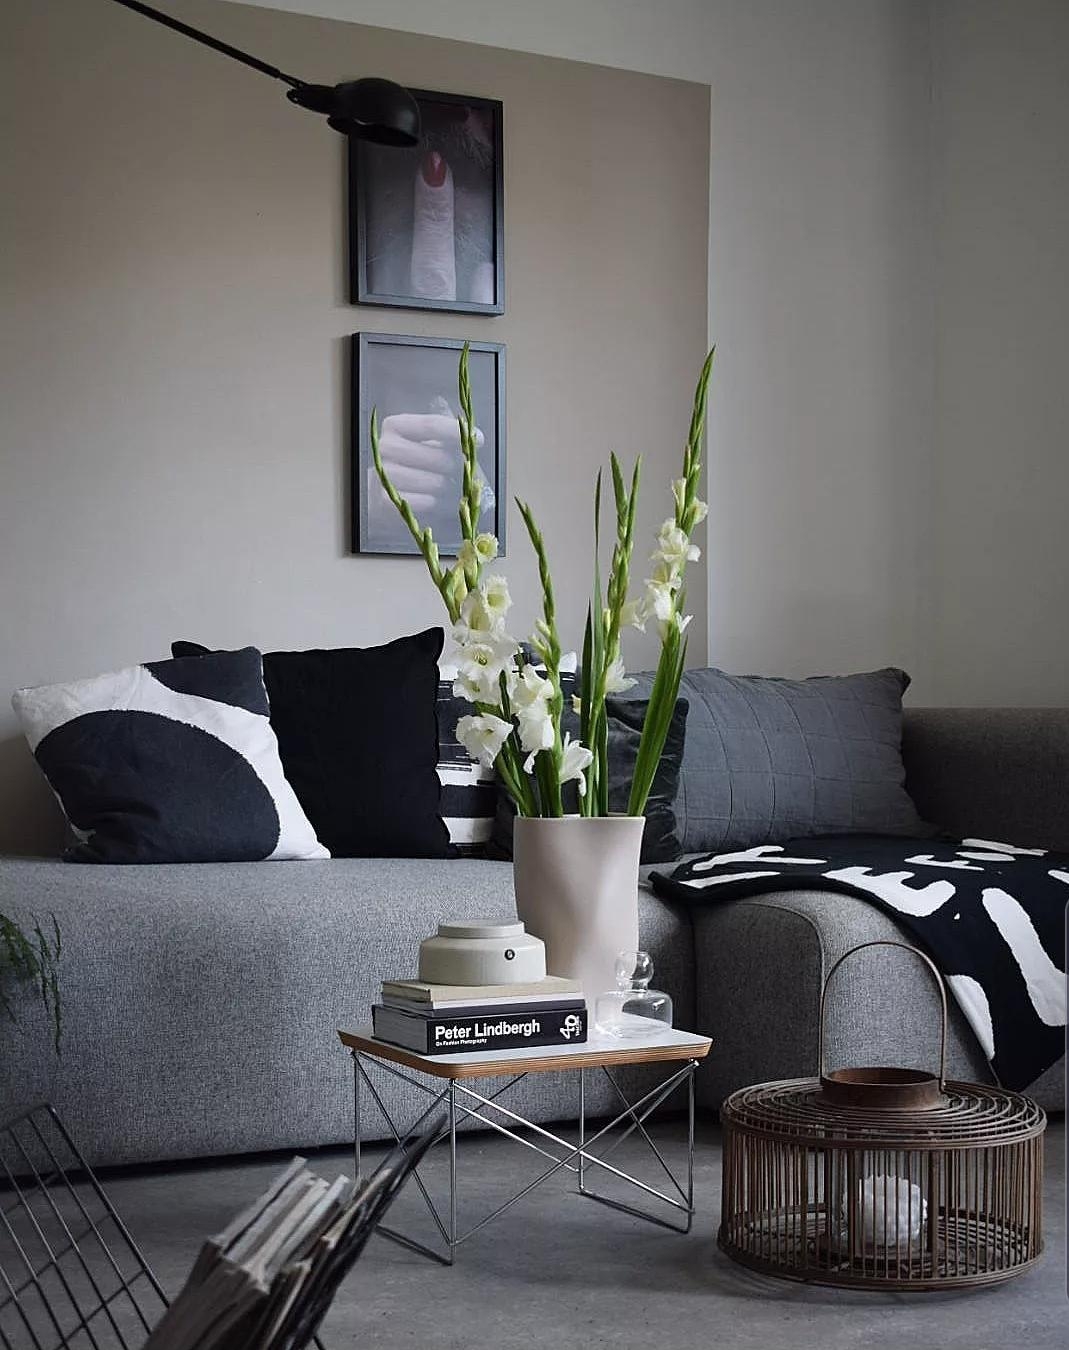 #wohnzimmer #livingroom #wohnen #sofa #couch #vase #flowers #blumen #gladiolen 